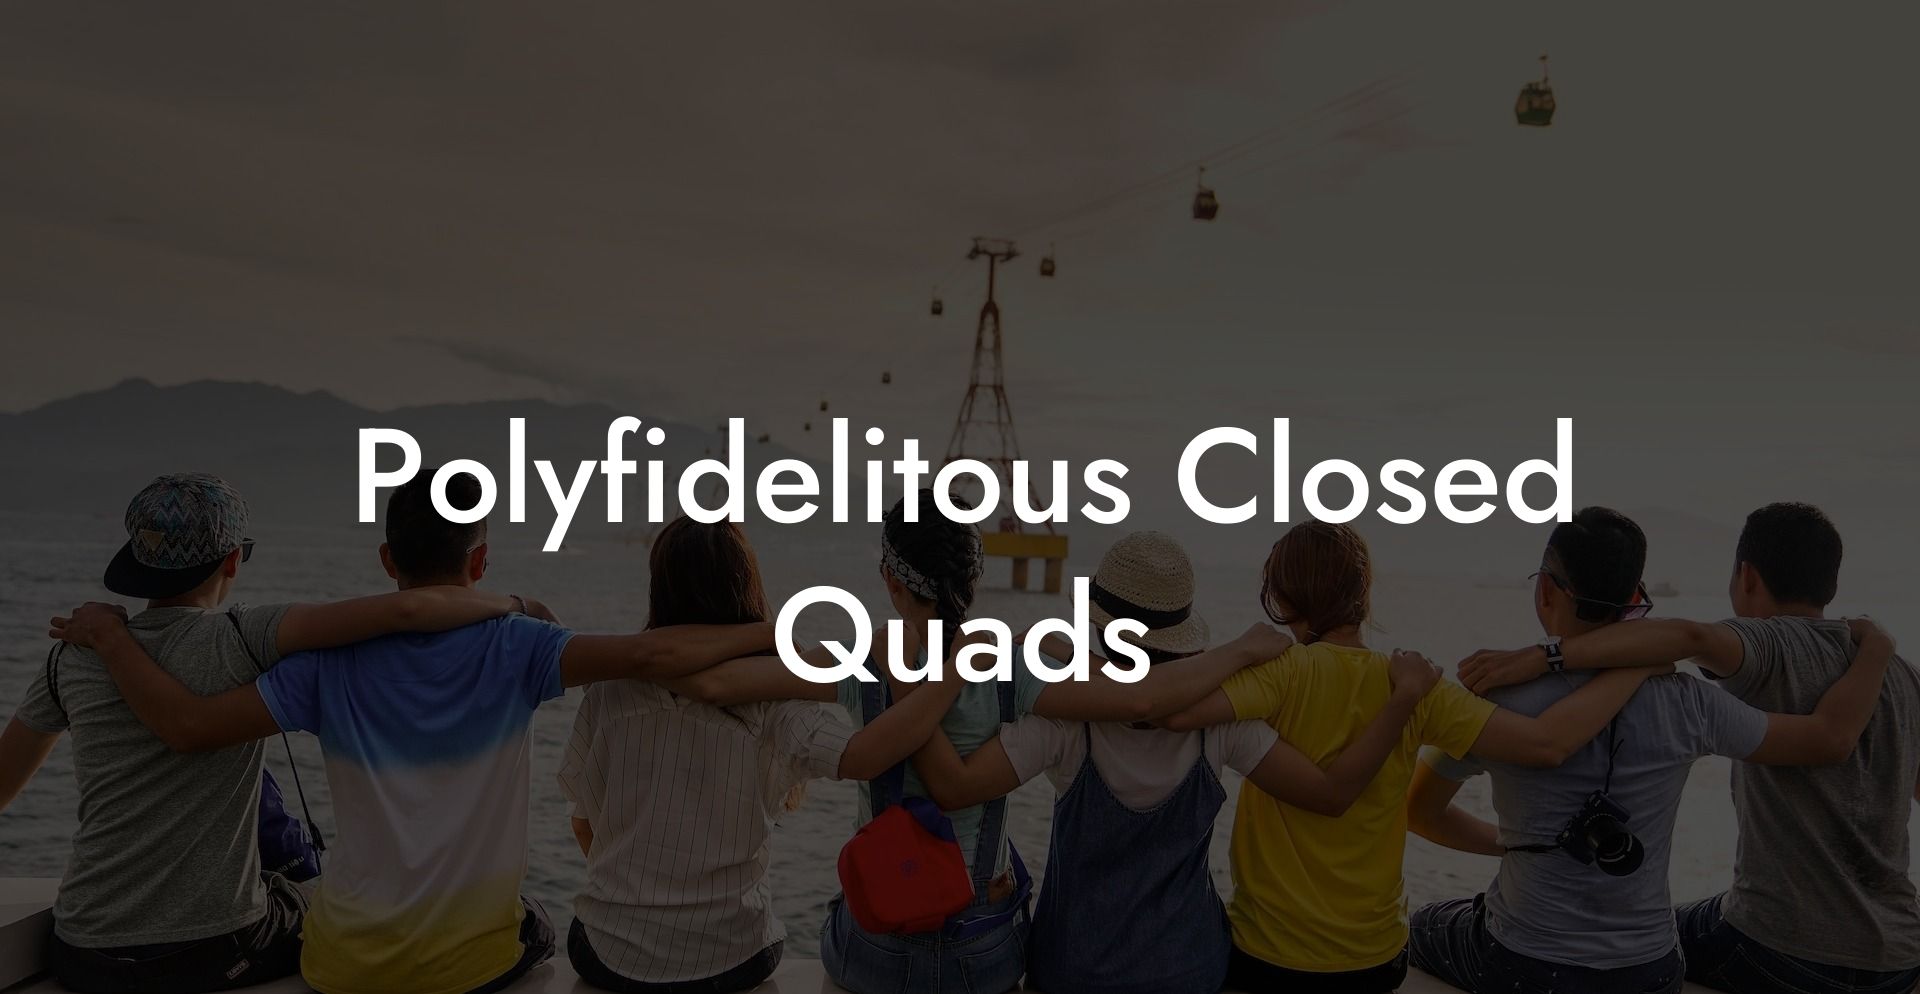 Polyfidelitous Closed Quads